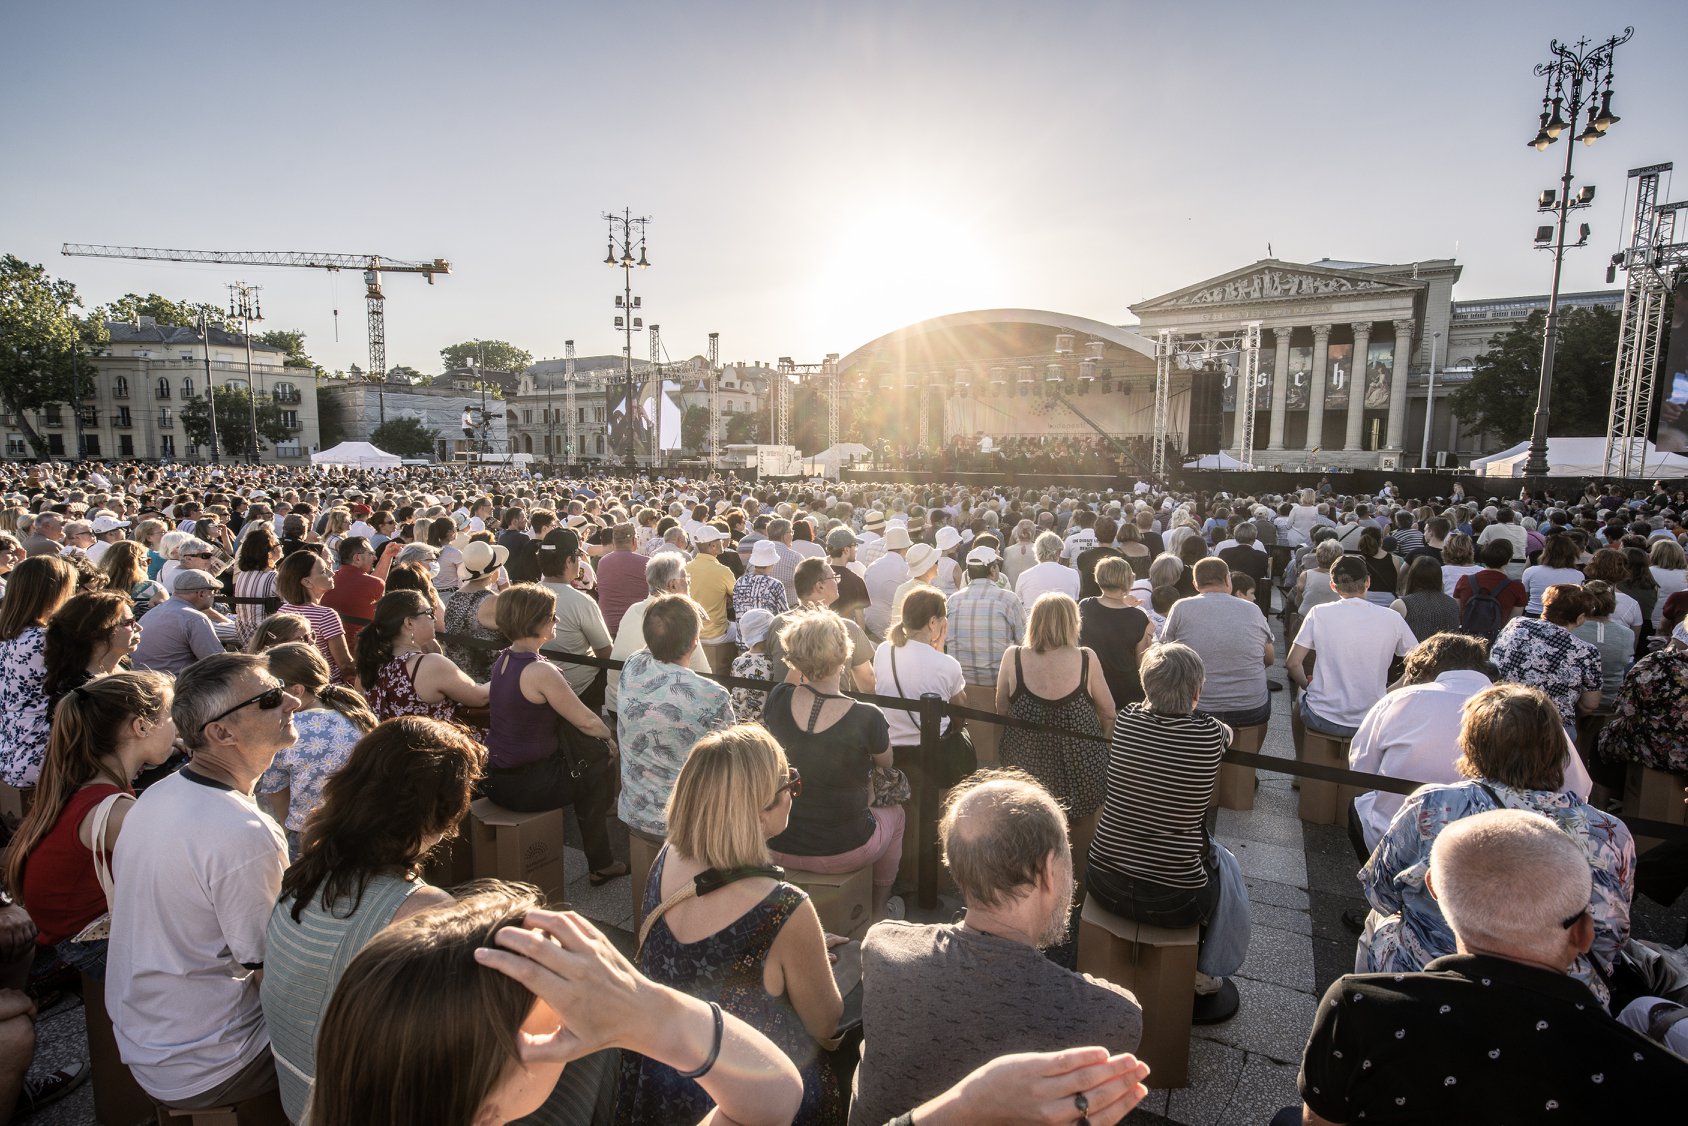 Ingyenes koncerttel kedveskedik a fővárosiaknak a Budapesti Fesztiválzenekar